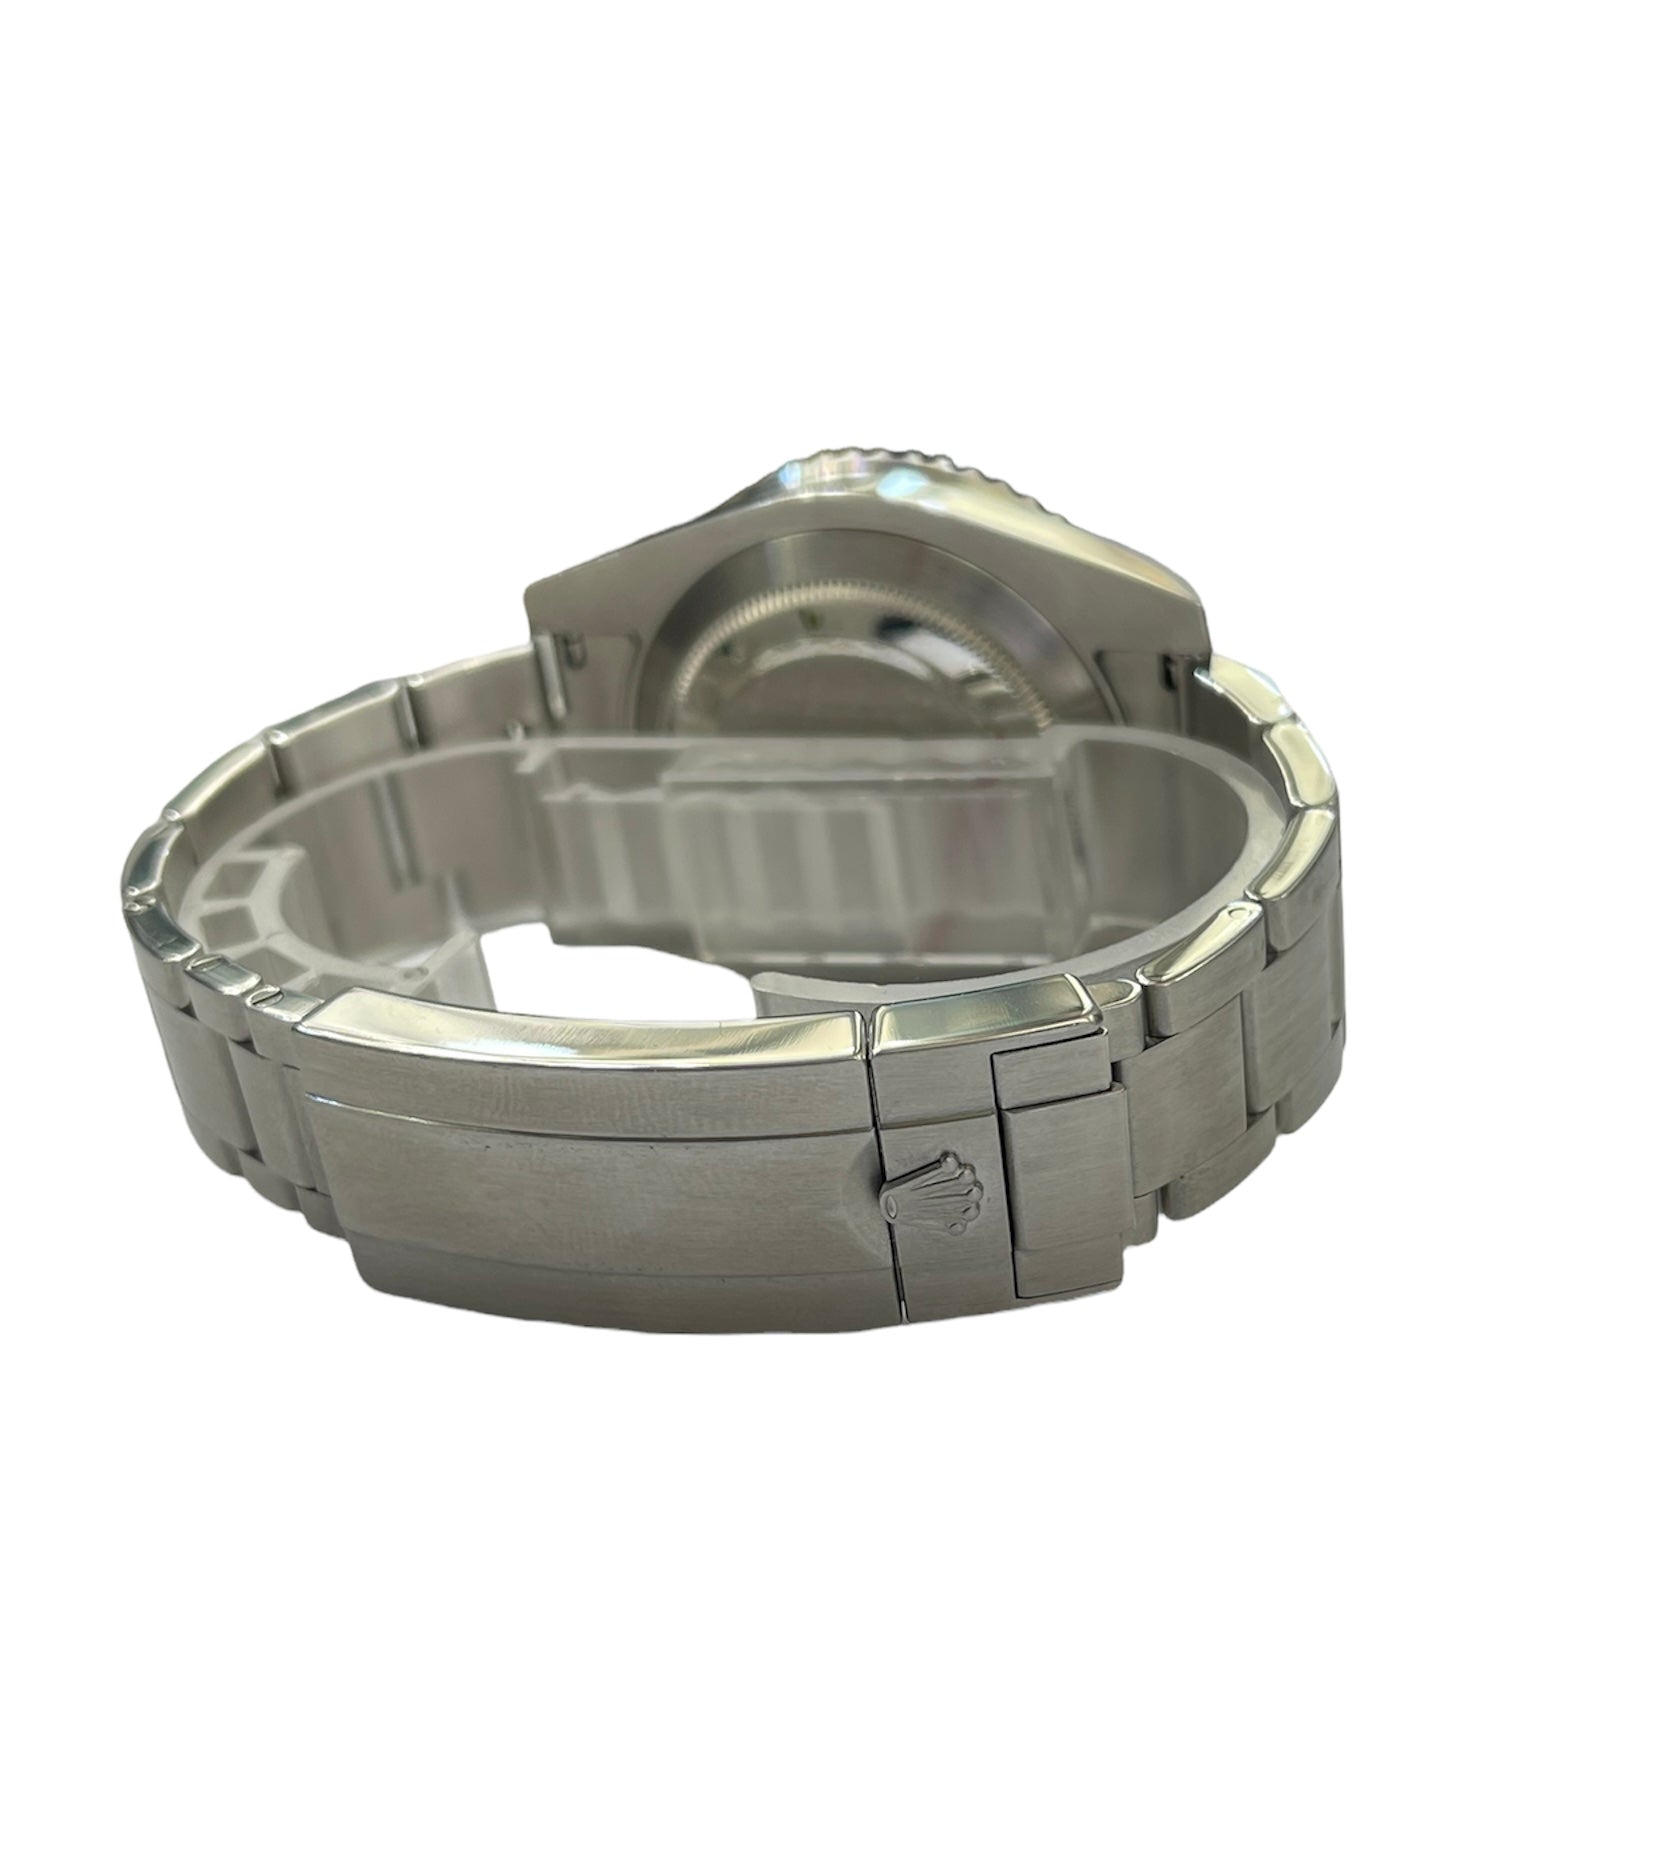 Rolex Ceramic Submariner Date Stainless Steel Watch Ref 1166102V